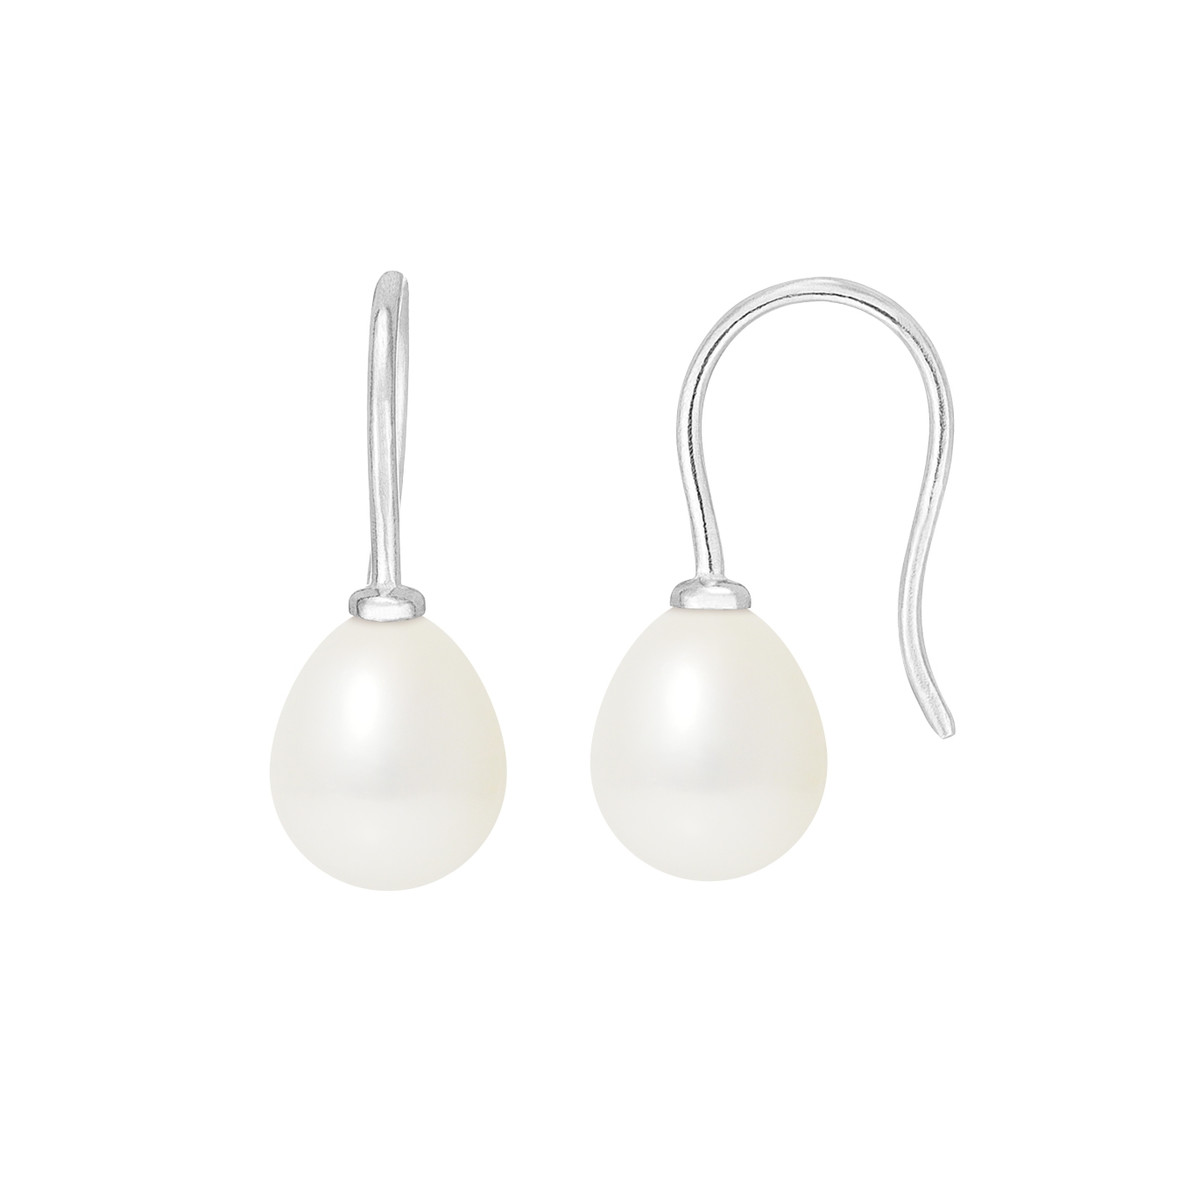 Boucles d'Oreilles à crochets Perles de Culture Blanches et or Blanc 375/1000